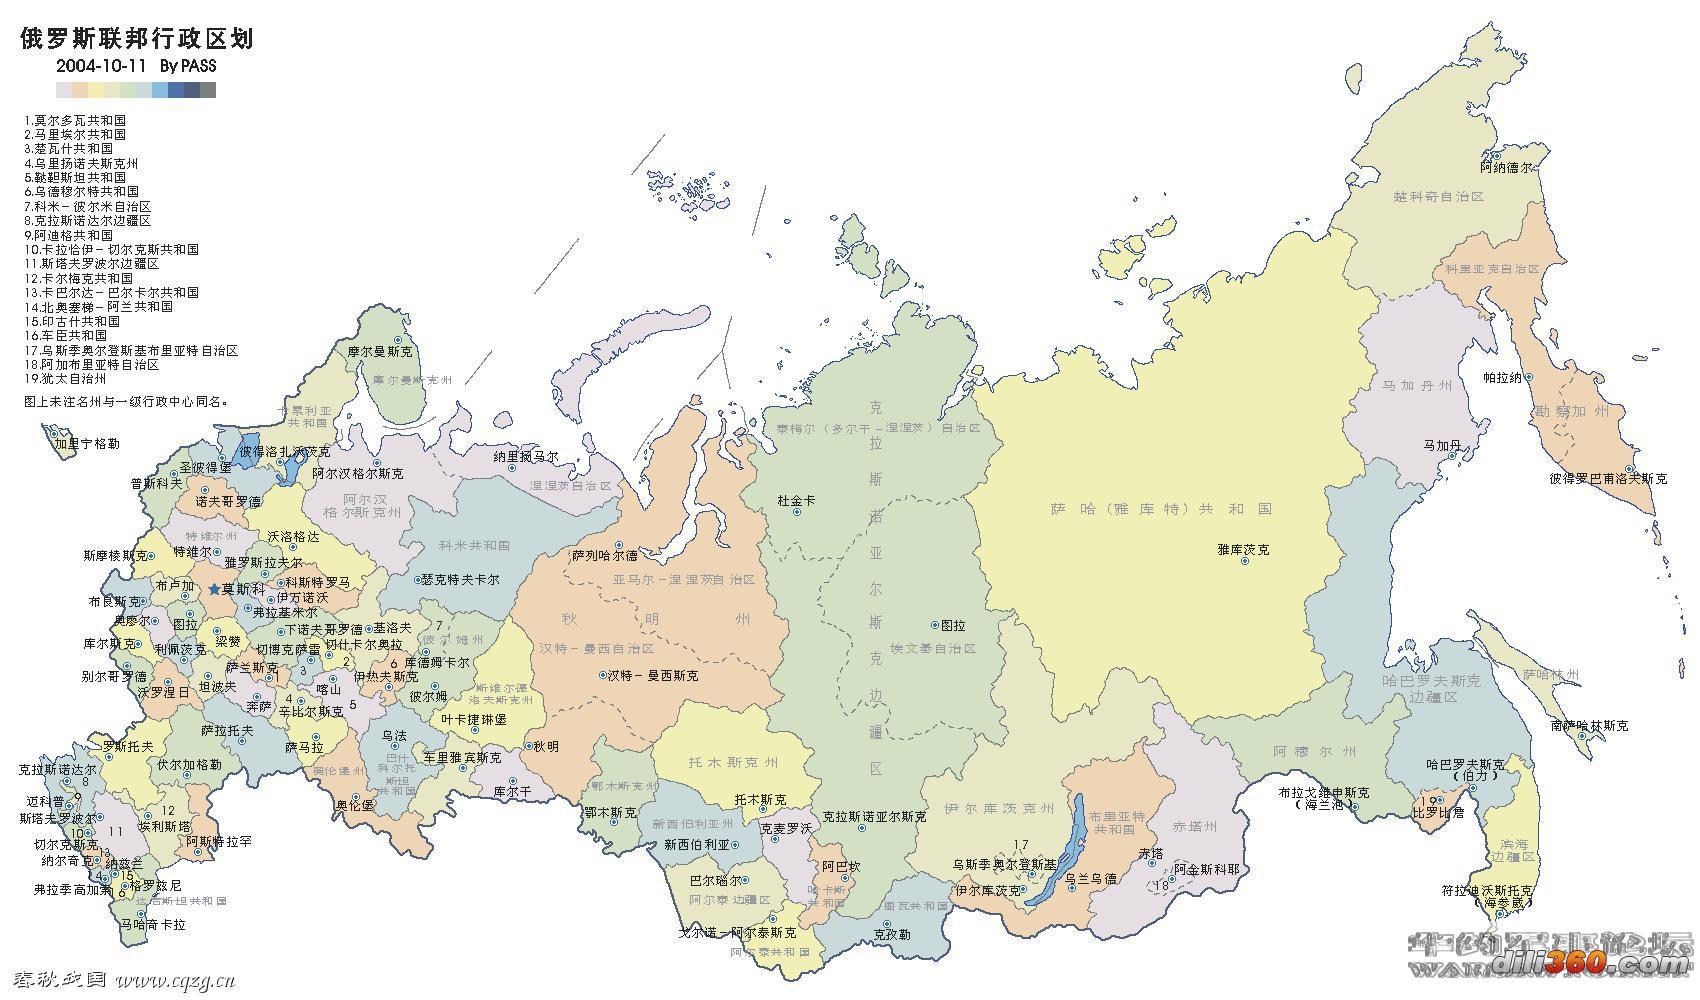 俄罗斯地图中文版全图高清_俄罗斯地图中文版全图_微信公众号文章